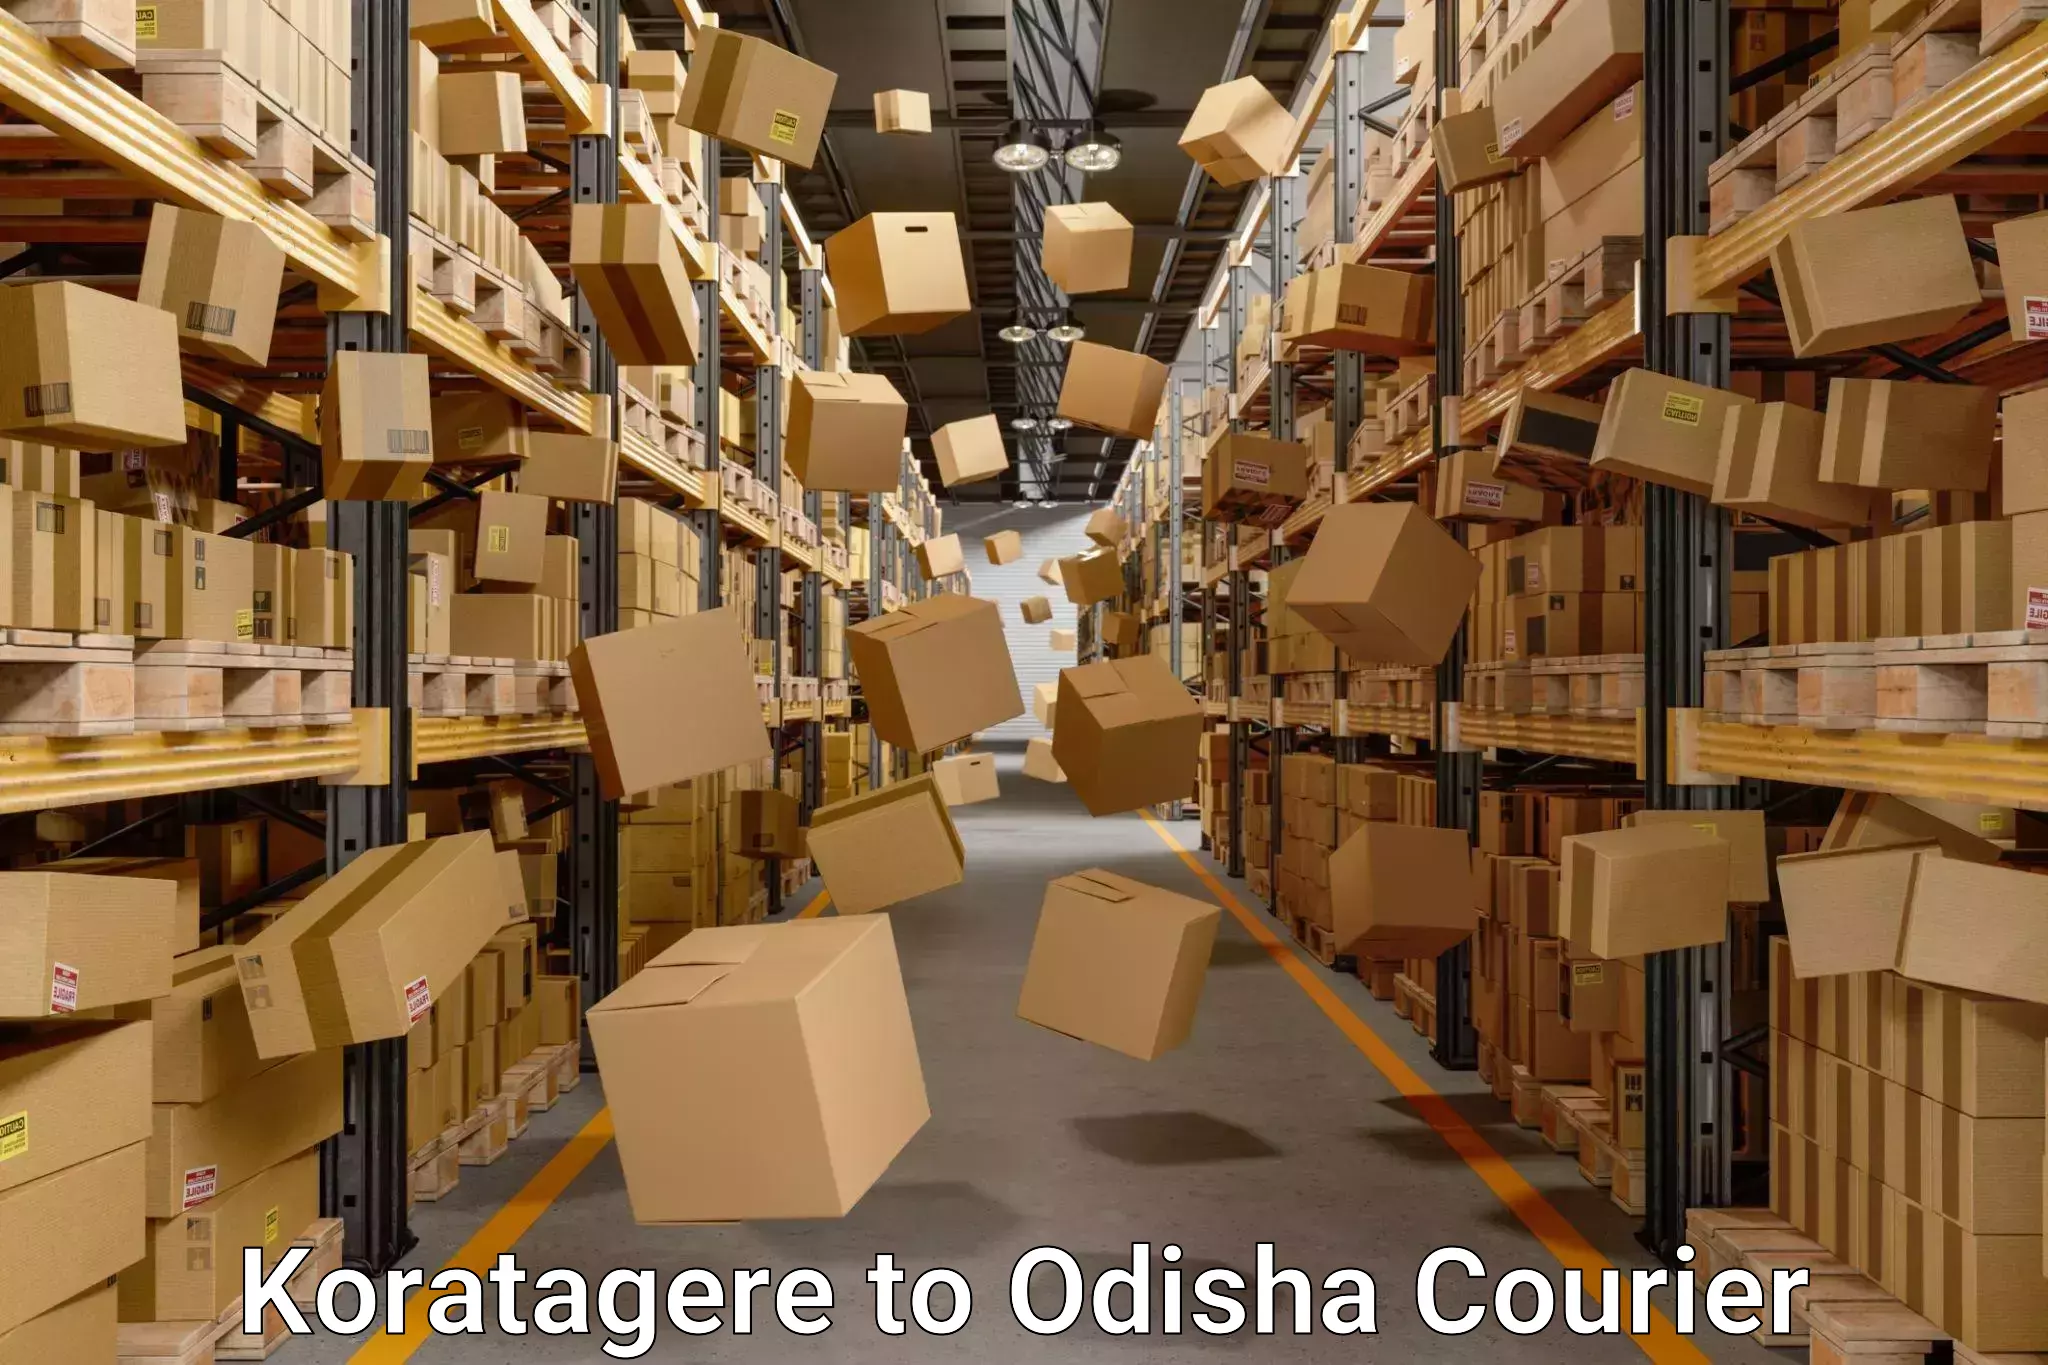 Furniture moving experts Koratagere to Odisha